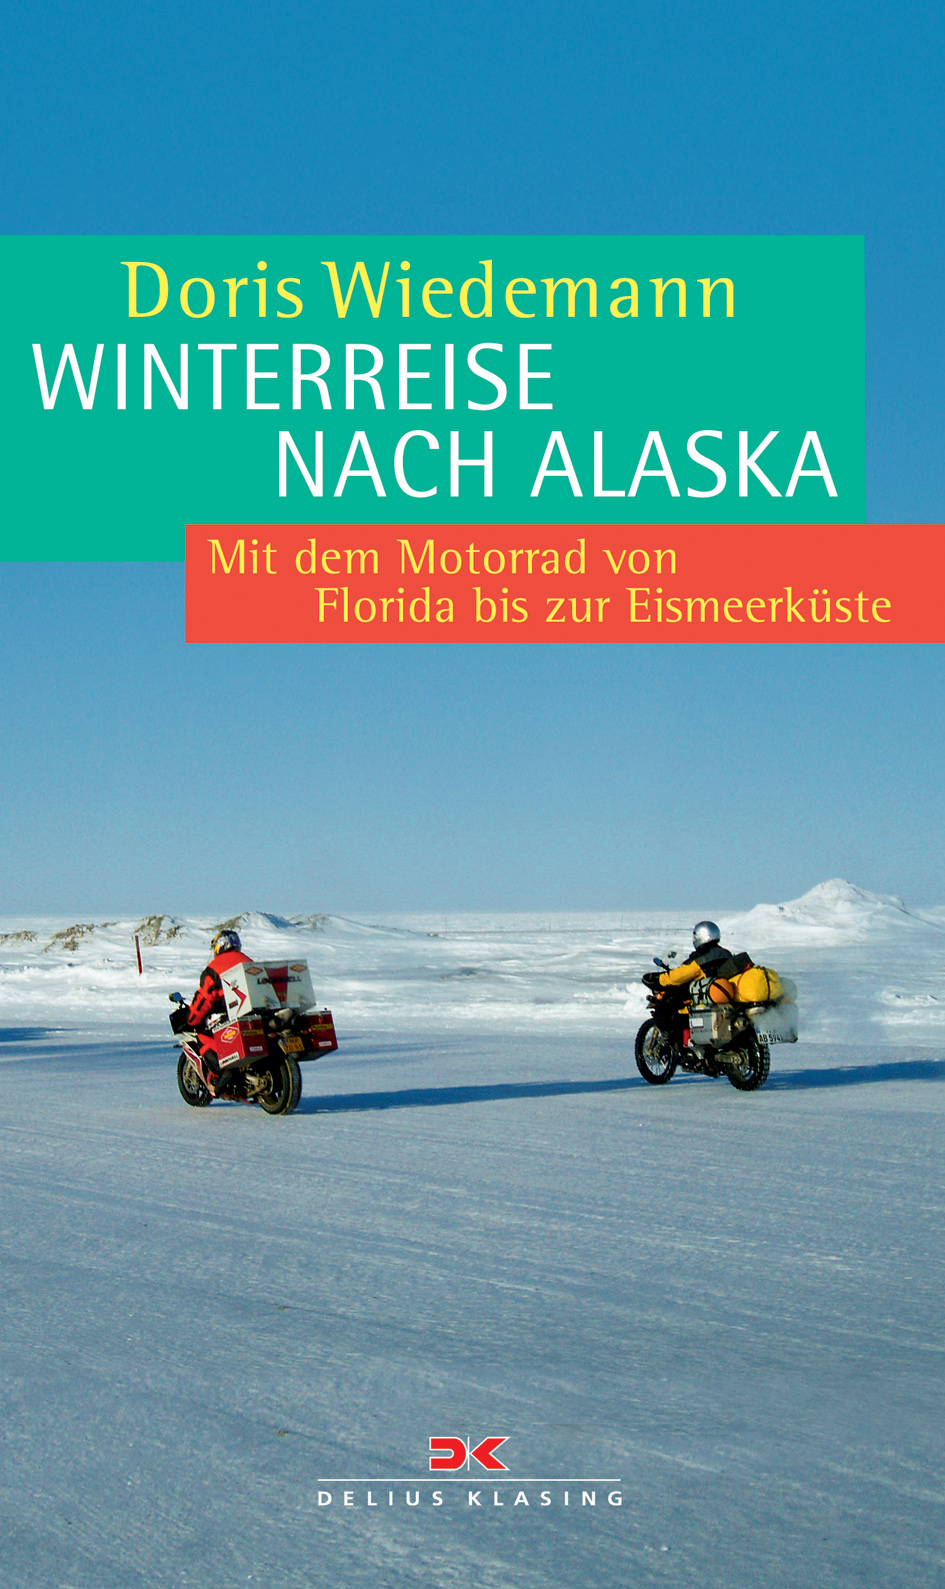 Book-Cover-Alaska_in_Winter.jpg